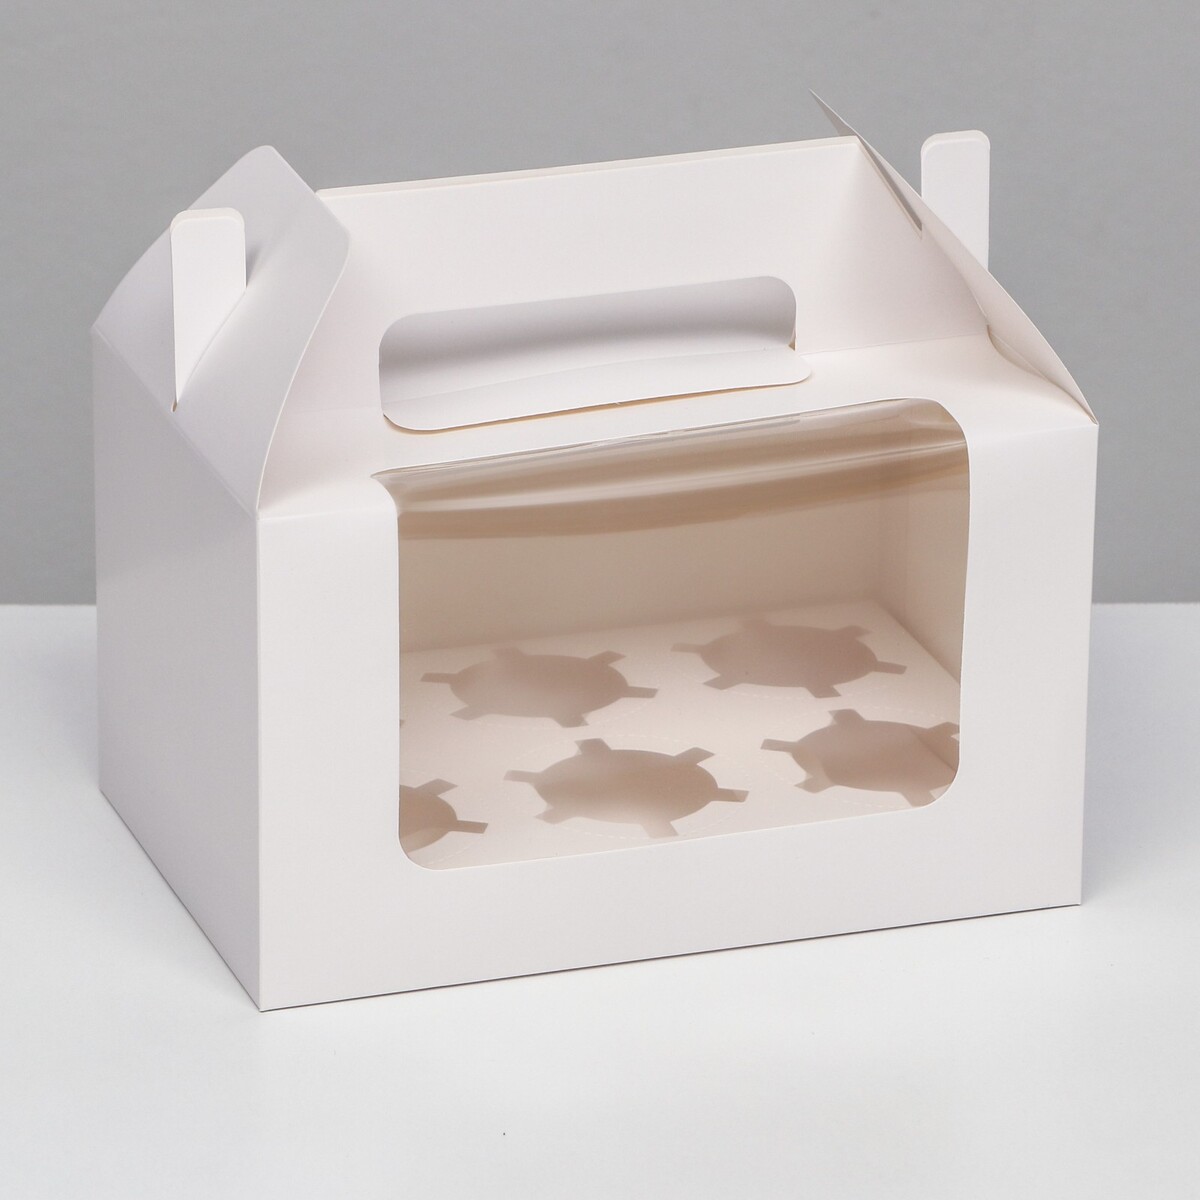 Кондитерская складная коробка для 6 капкейков, белая 23,5 х 16 х 14 см кондитерская складная коробка для 6 капкейков белая 23 5 х 16 х 14 см